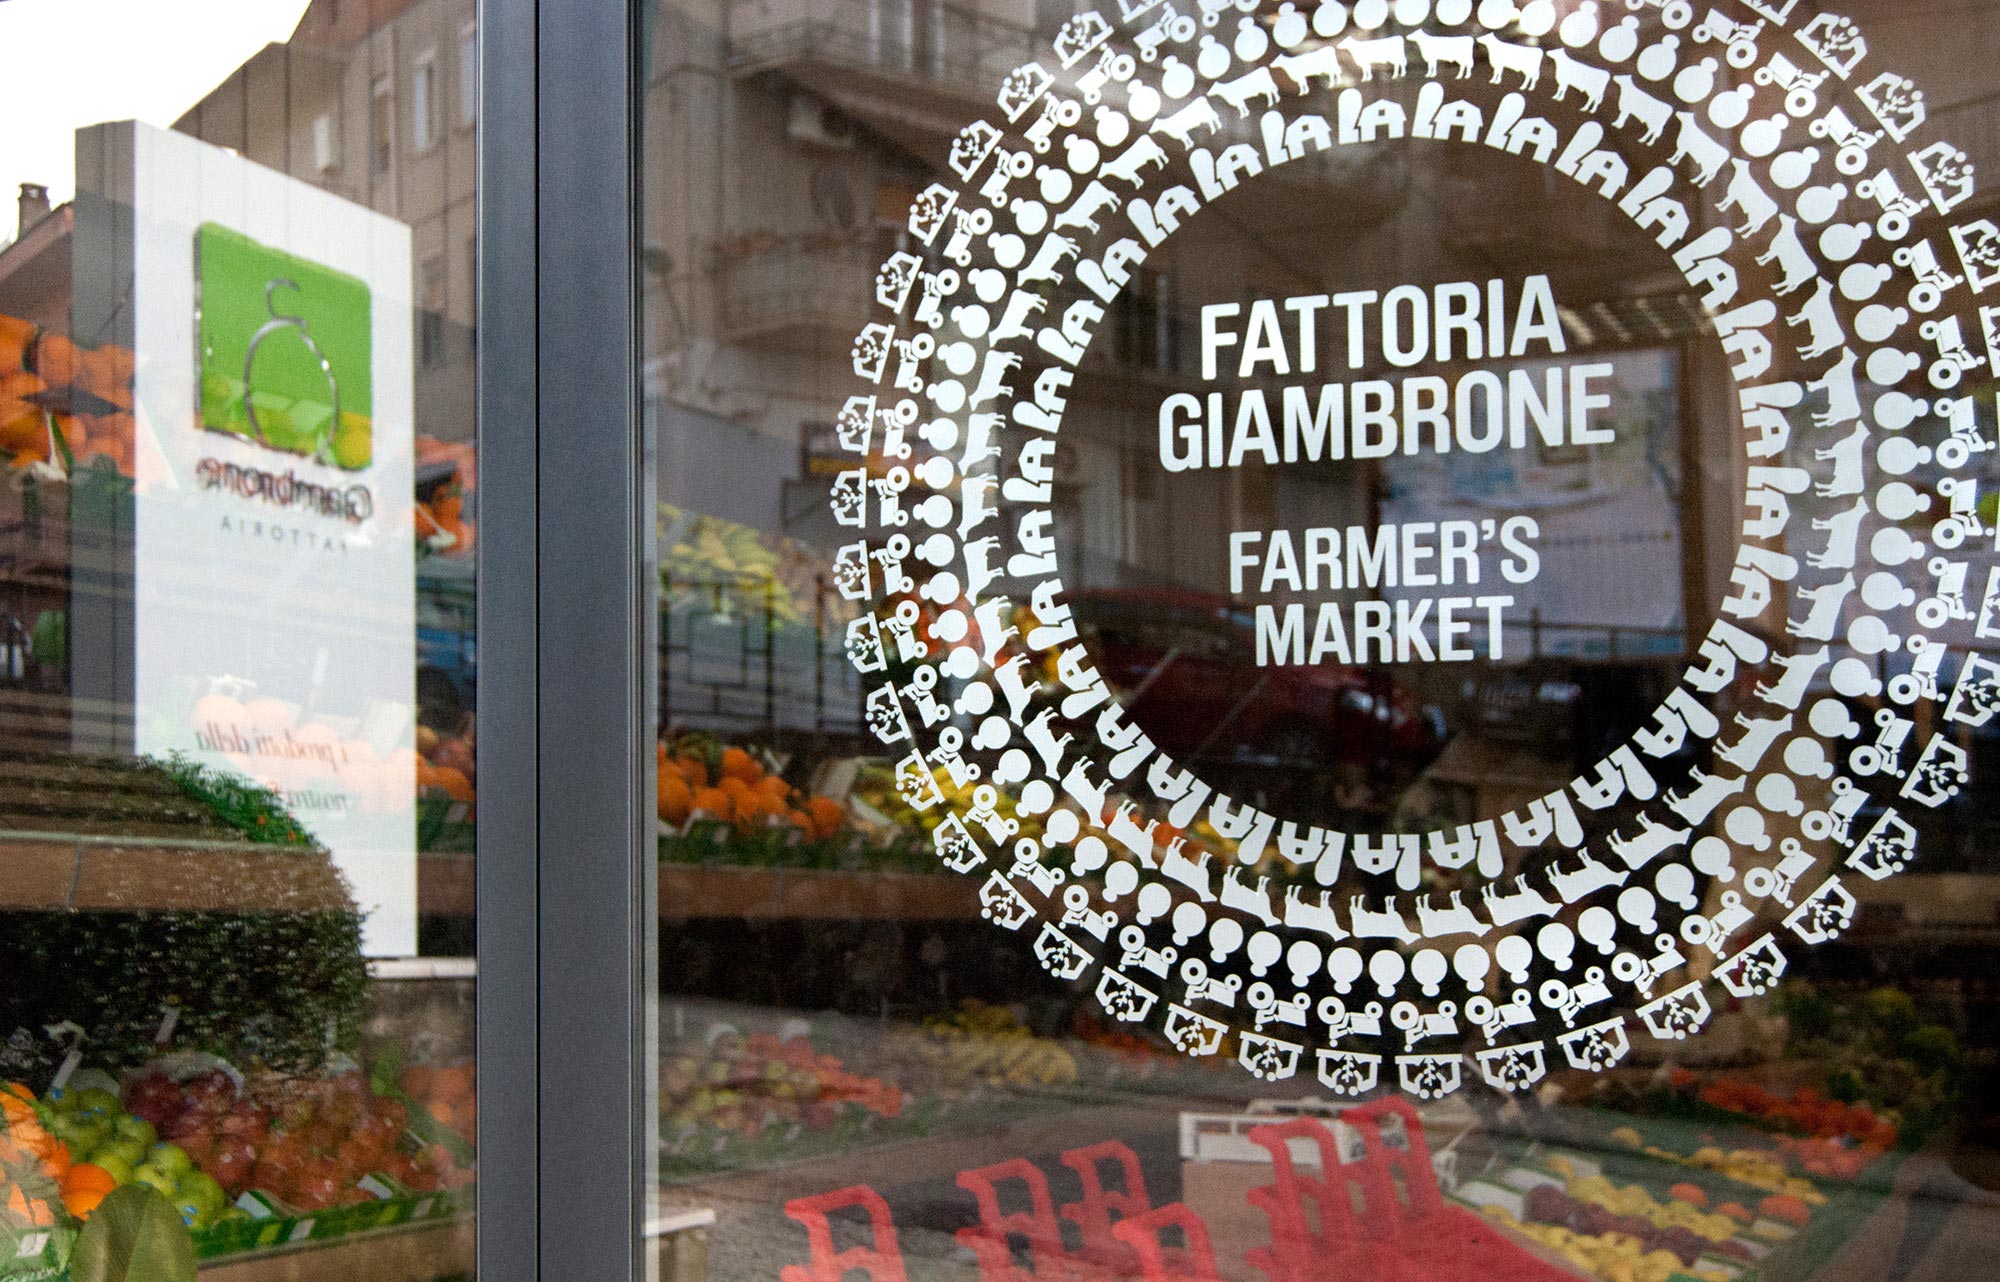 Farmer's Market - Fattoria Giambrone - Cammarata - Agrigento - Sicilia